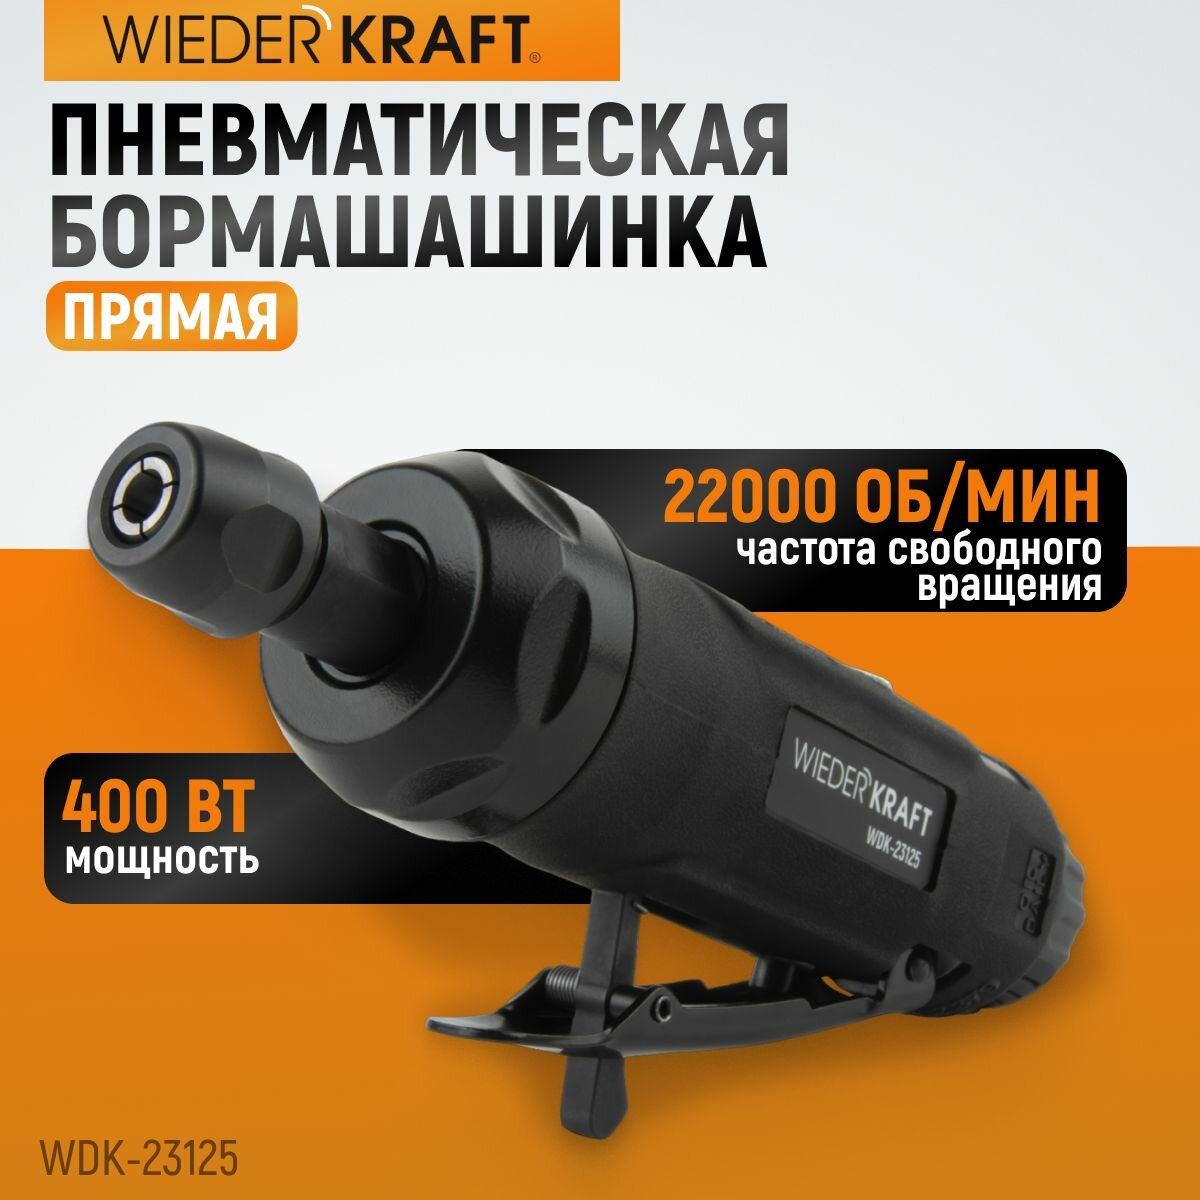 Пневматическая прямая бормашинка 22000 Об/мин, 400 Вт WDK-23125